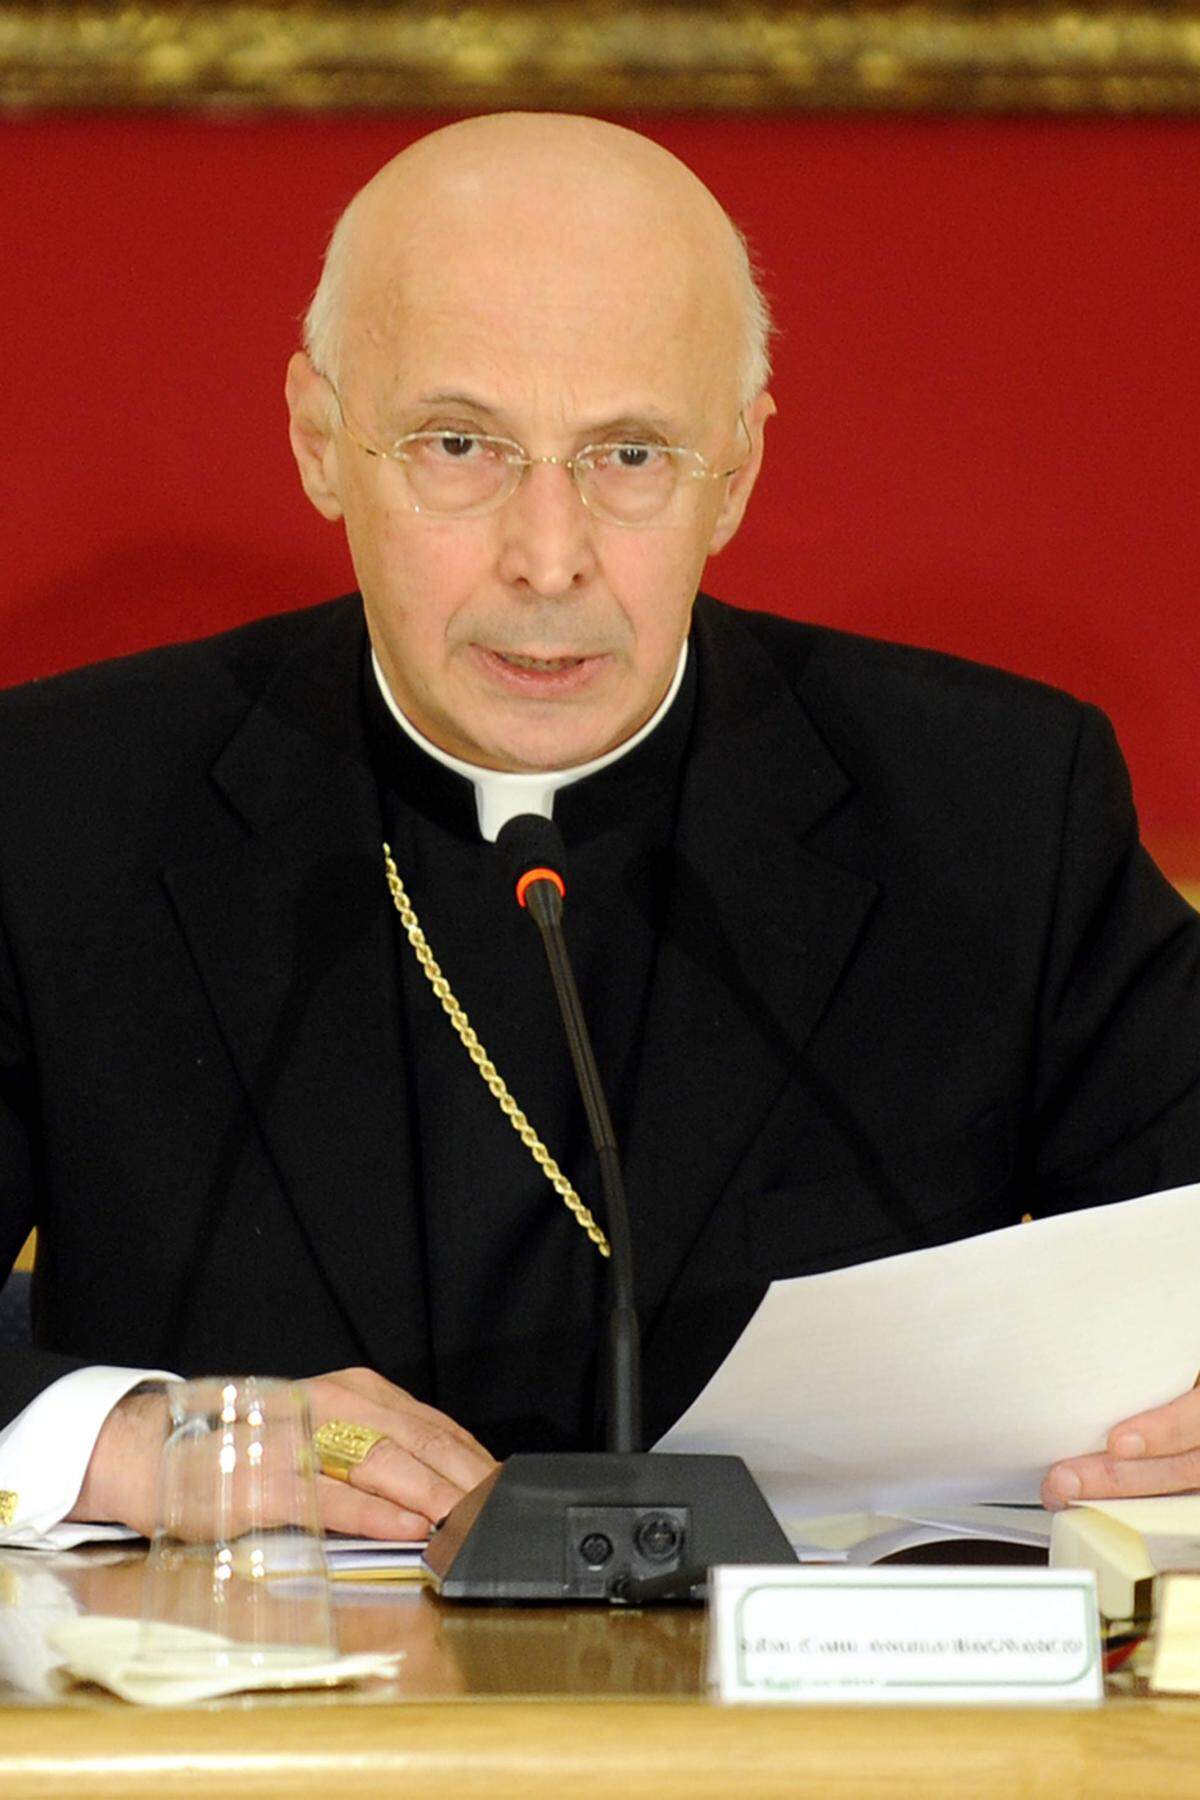 Neben Scola gute Chancen hat auch Angelo Bagnasco (70), Präsident der italienischen Bischofskonferenz. Erst im März 2012 wurde er vom Papst für weitere fünf Jahre in seiner Position bestätigt.